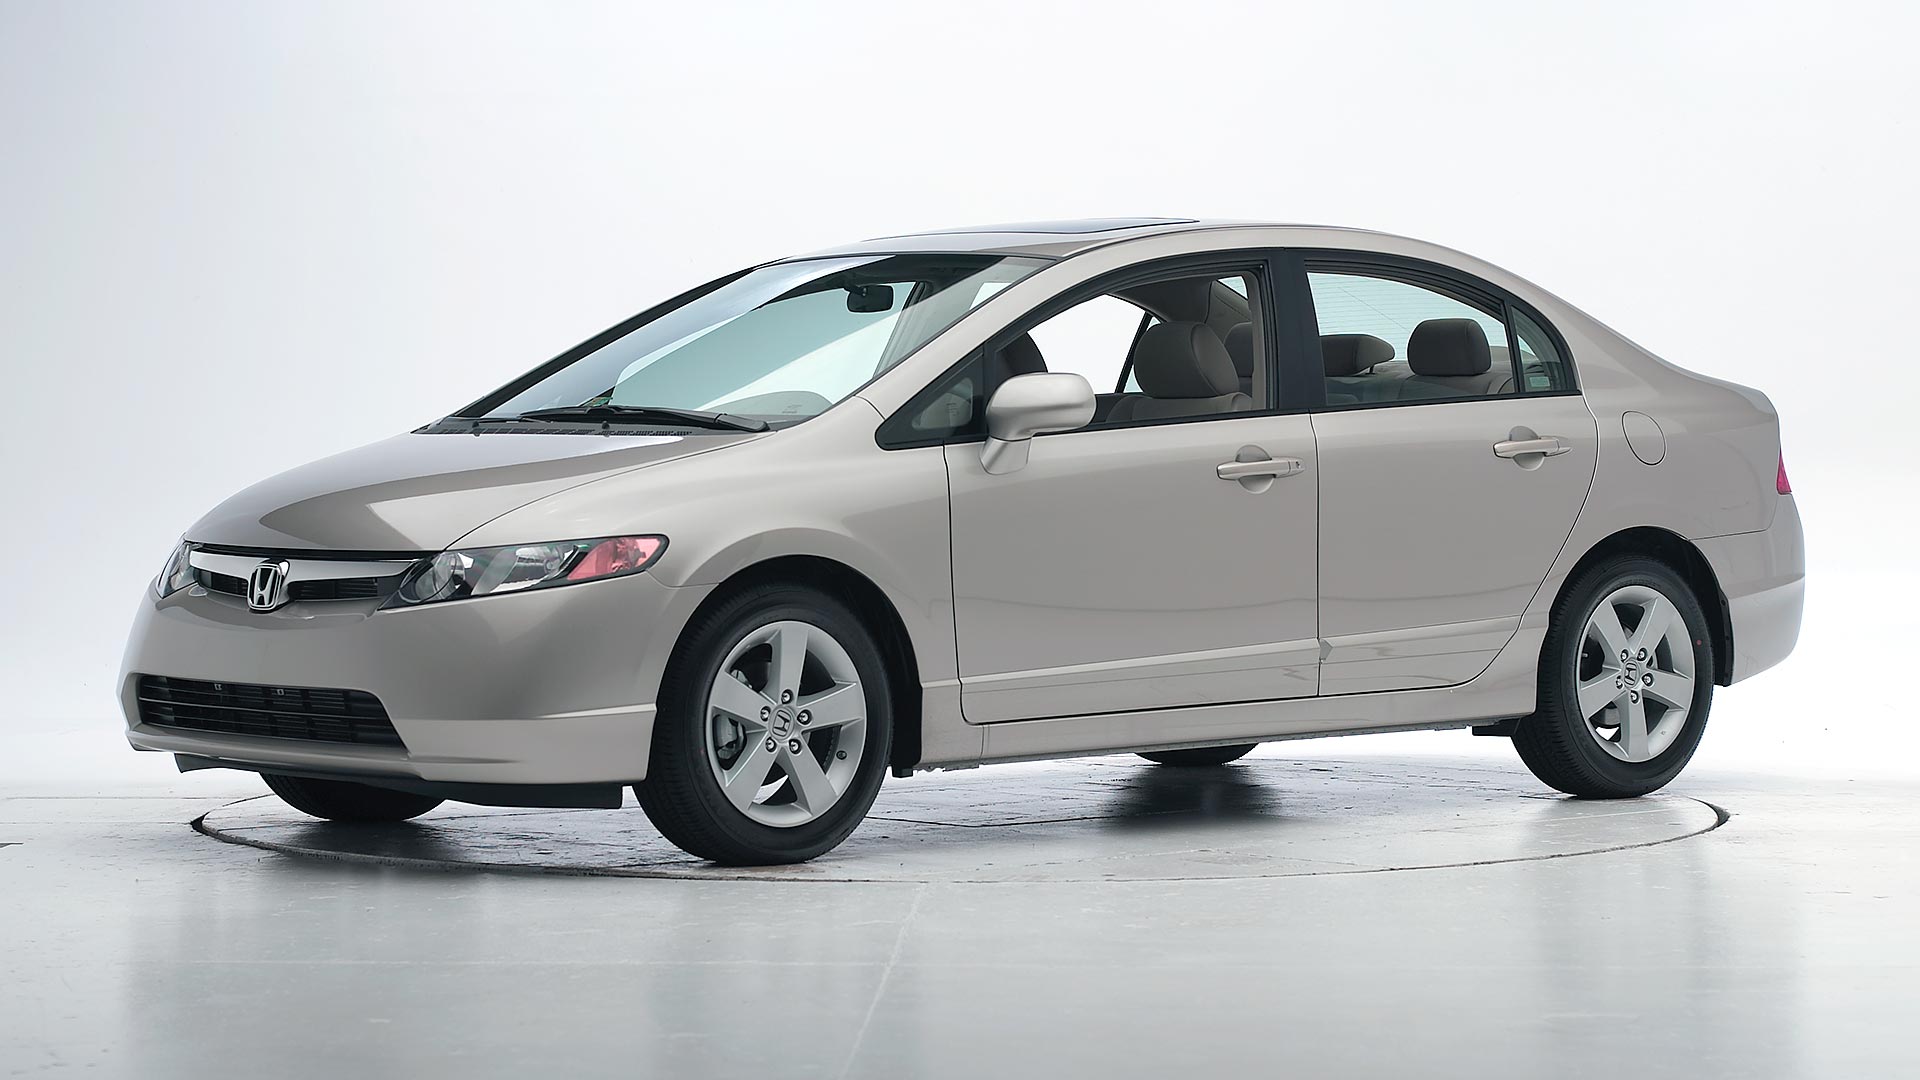 2008 Honda Civic Dx Sedan 4d - View All Honda Car Models & Types